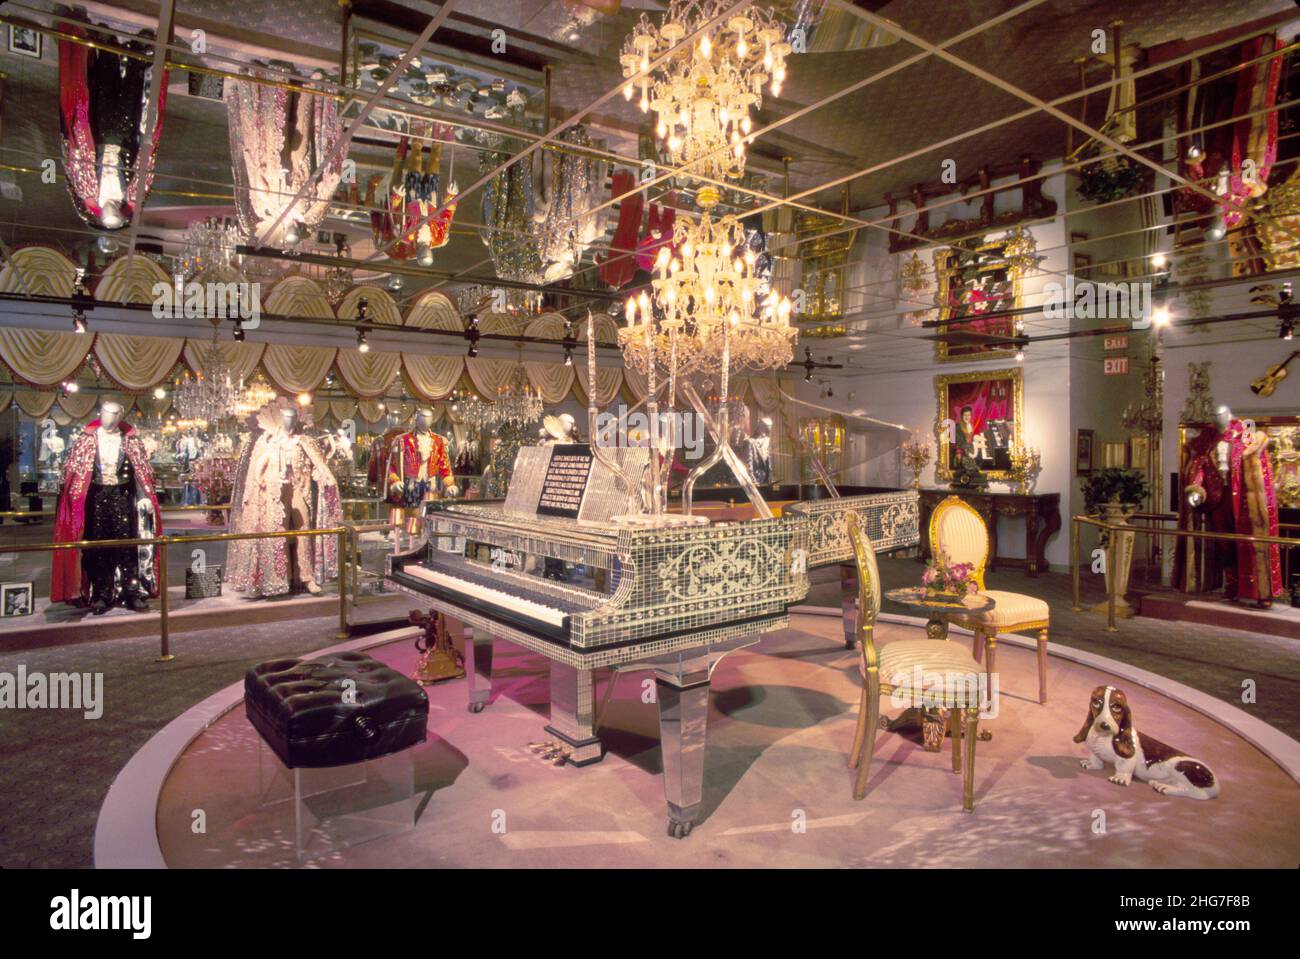 Las Vegas Nevada, Liberace Museum Collection, exposition spectacle spectacle de divertissement concert grand piano chandelier armoire piano pianiste, joueur intérieur Banque D'Images